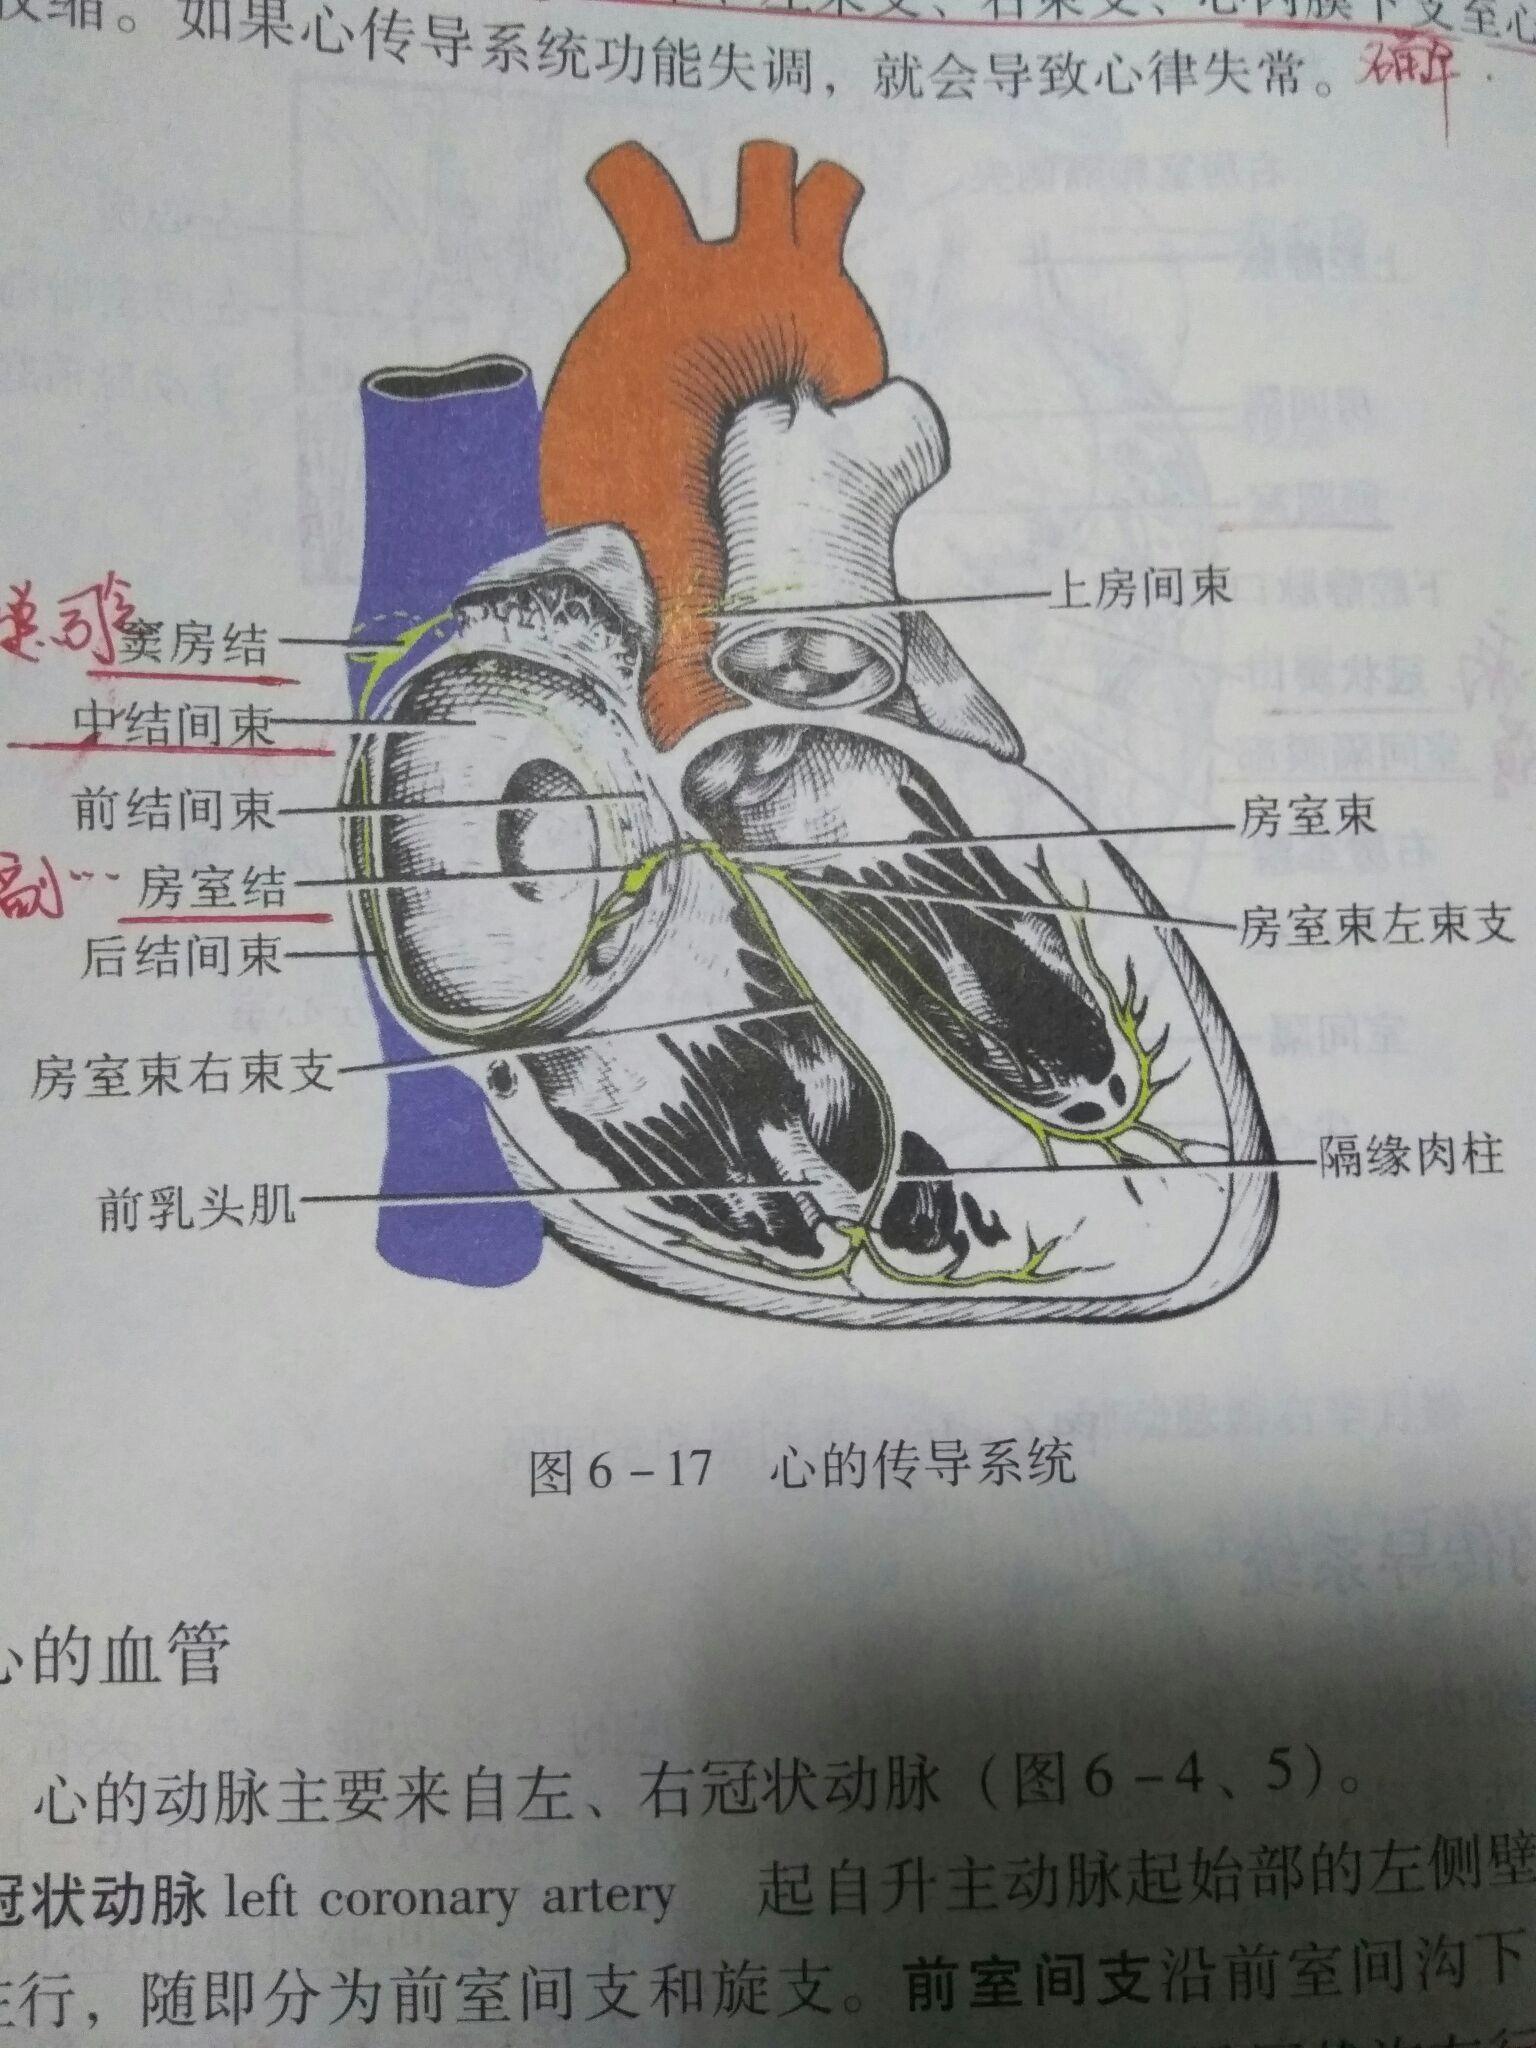 心臟內部結構左心房醫療插畫圖片素材-PSD圖片尺寸3000 × 2000px-高清圖案401789977-zh.lovepik.com